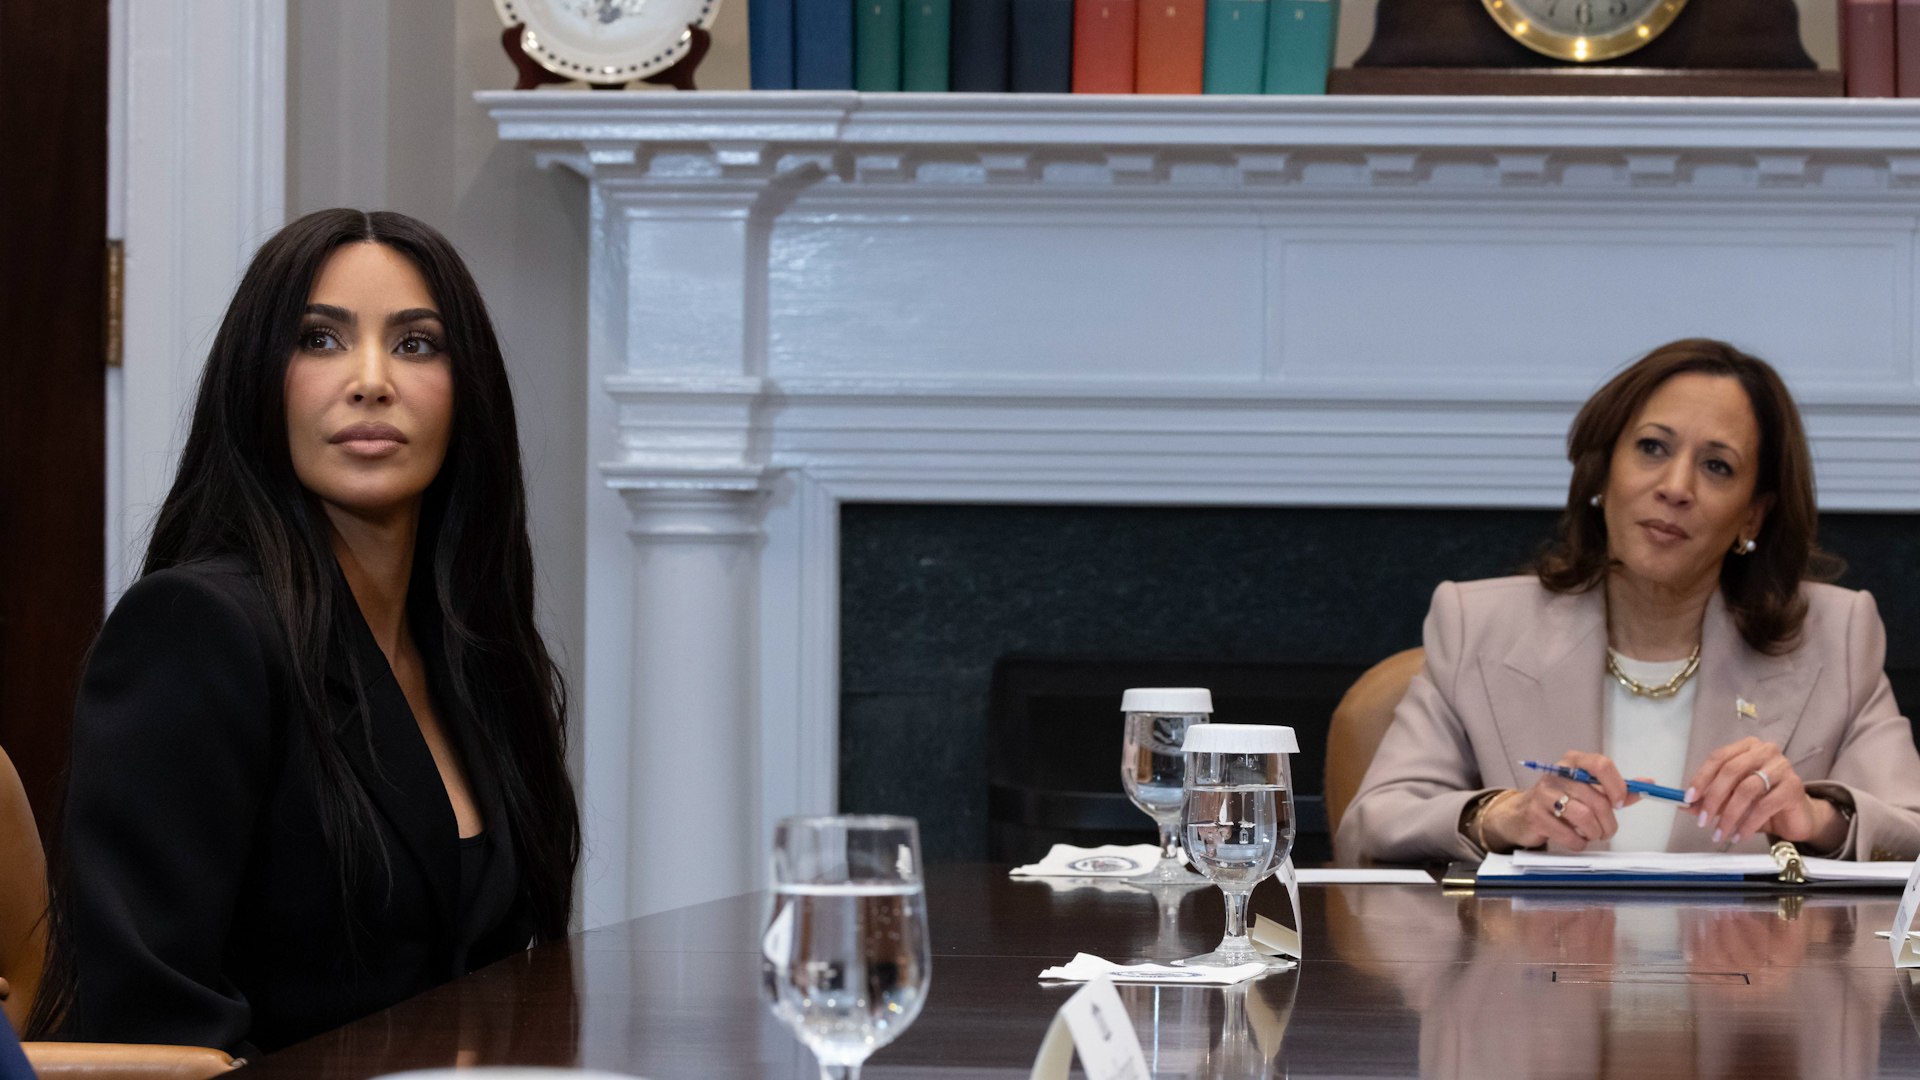 Kim Kardashian, invitada en la Casa Blanca para discutir la reforma de justicia penal de EEUU